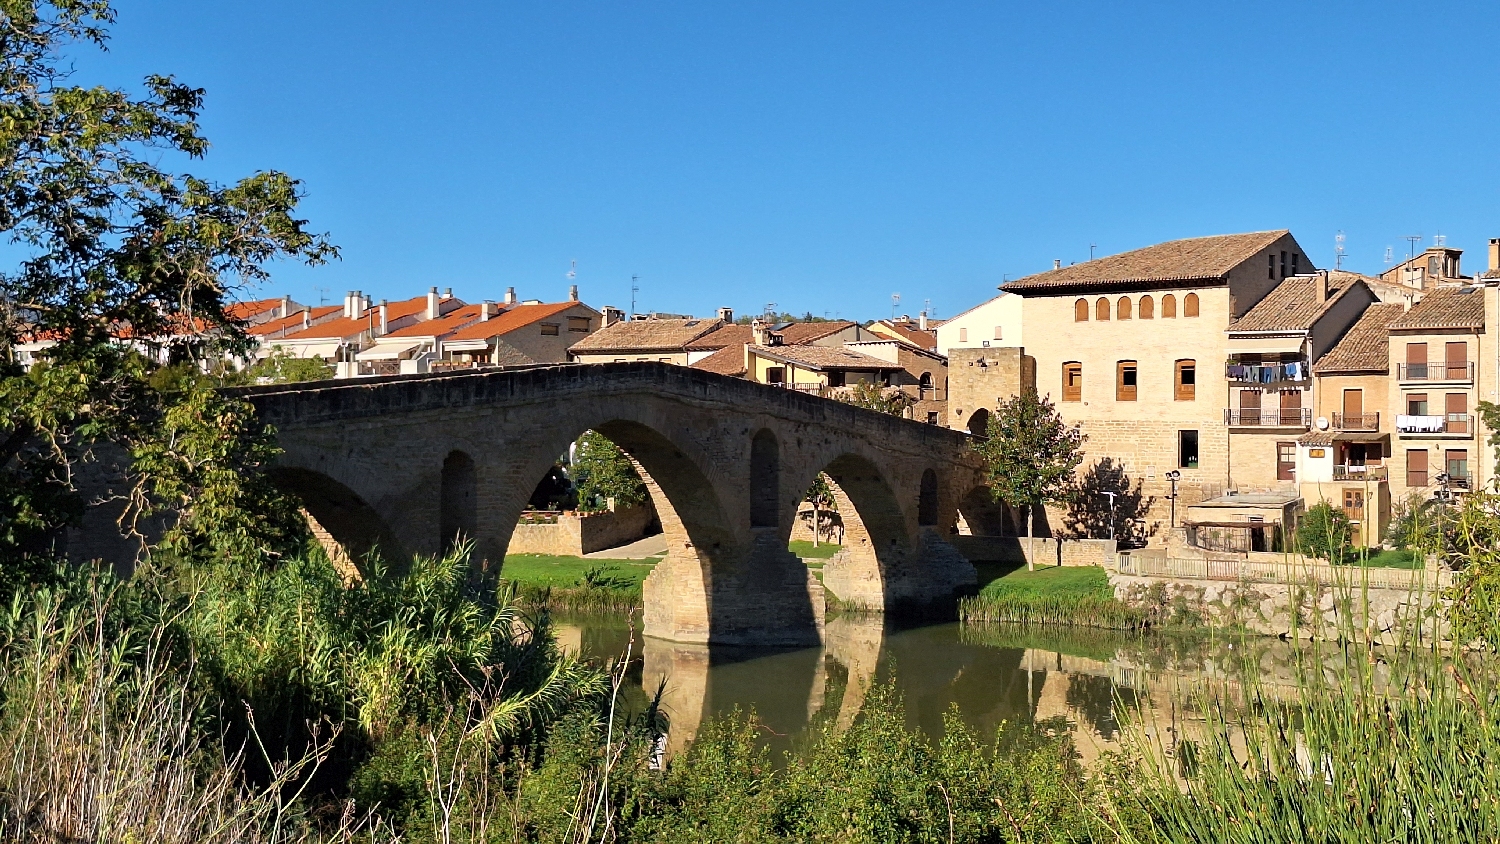 El Camino, Aragon út, Francia út, Puente la Reina, a régi gyalogos kőhíd a túlpartról fotózva